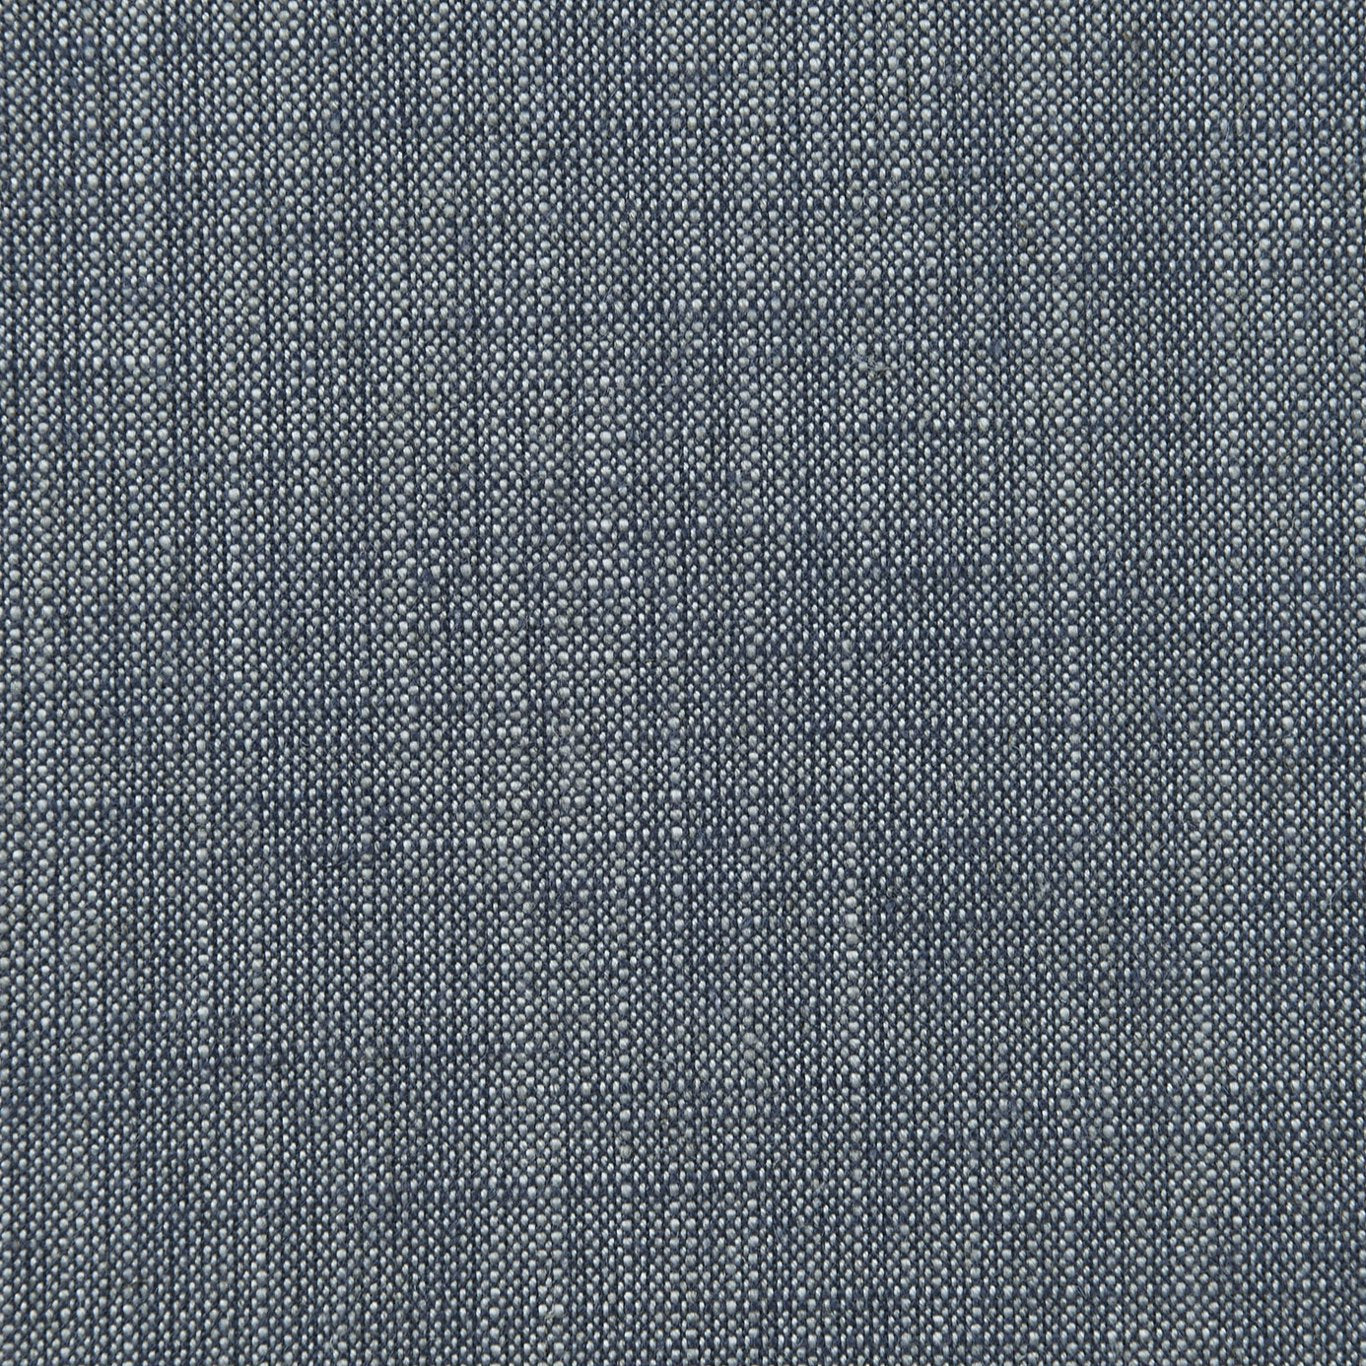 Biarritz Fabric by Clarke & Clarke - F0965/14 - Denim